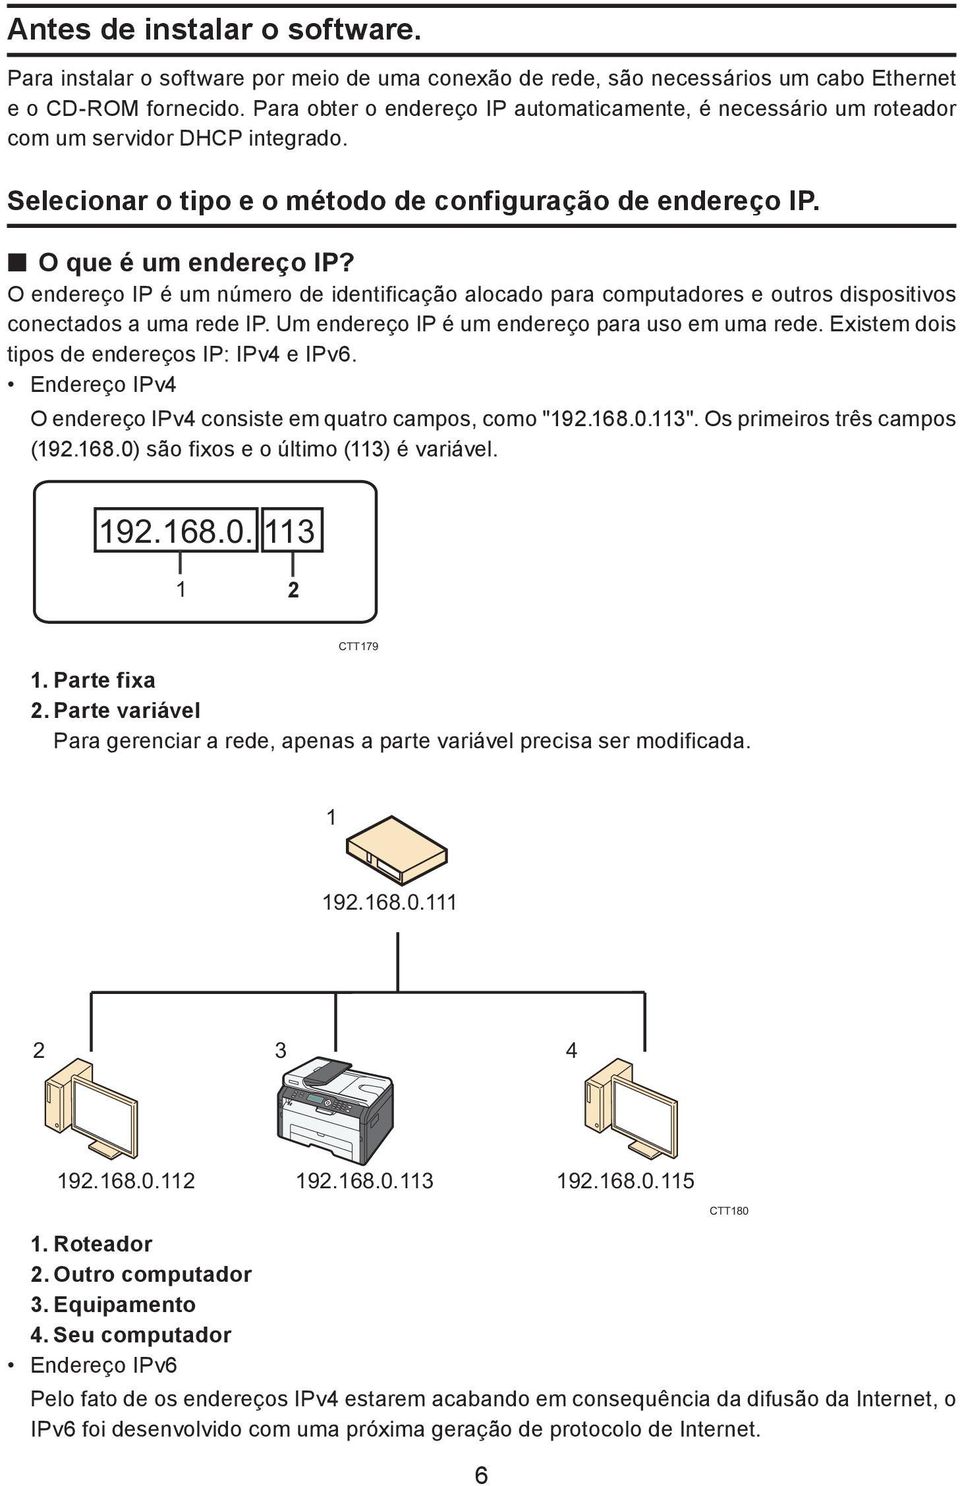 O endereço IP é um número de identificação alocado para computadores e outros dispositivos conectados a uma rede IP. Um endereço IP é um endereço para uso em uma rede.